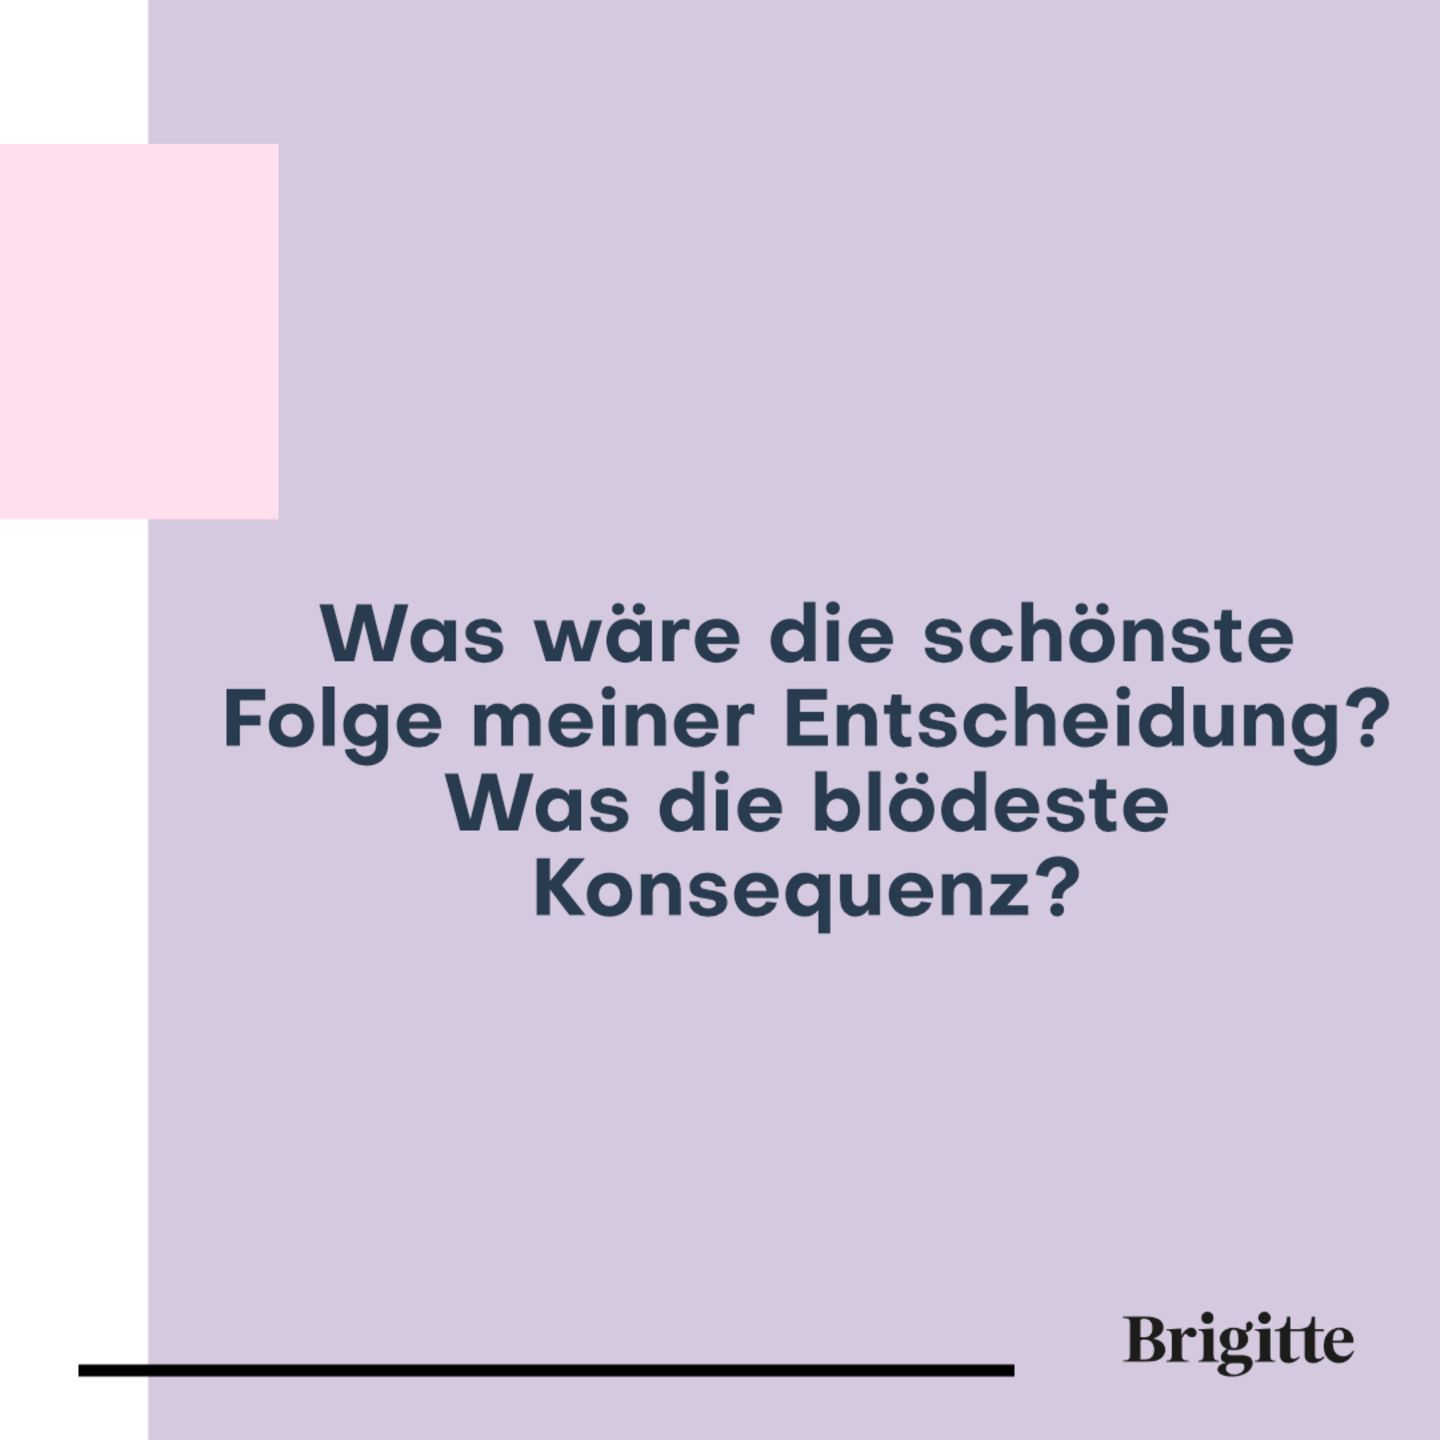 100 Fragen: Wichtige Entscheidungen treffen | BRIGITTE.de